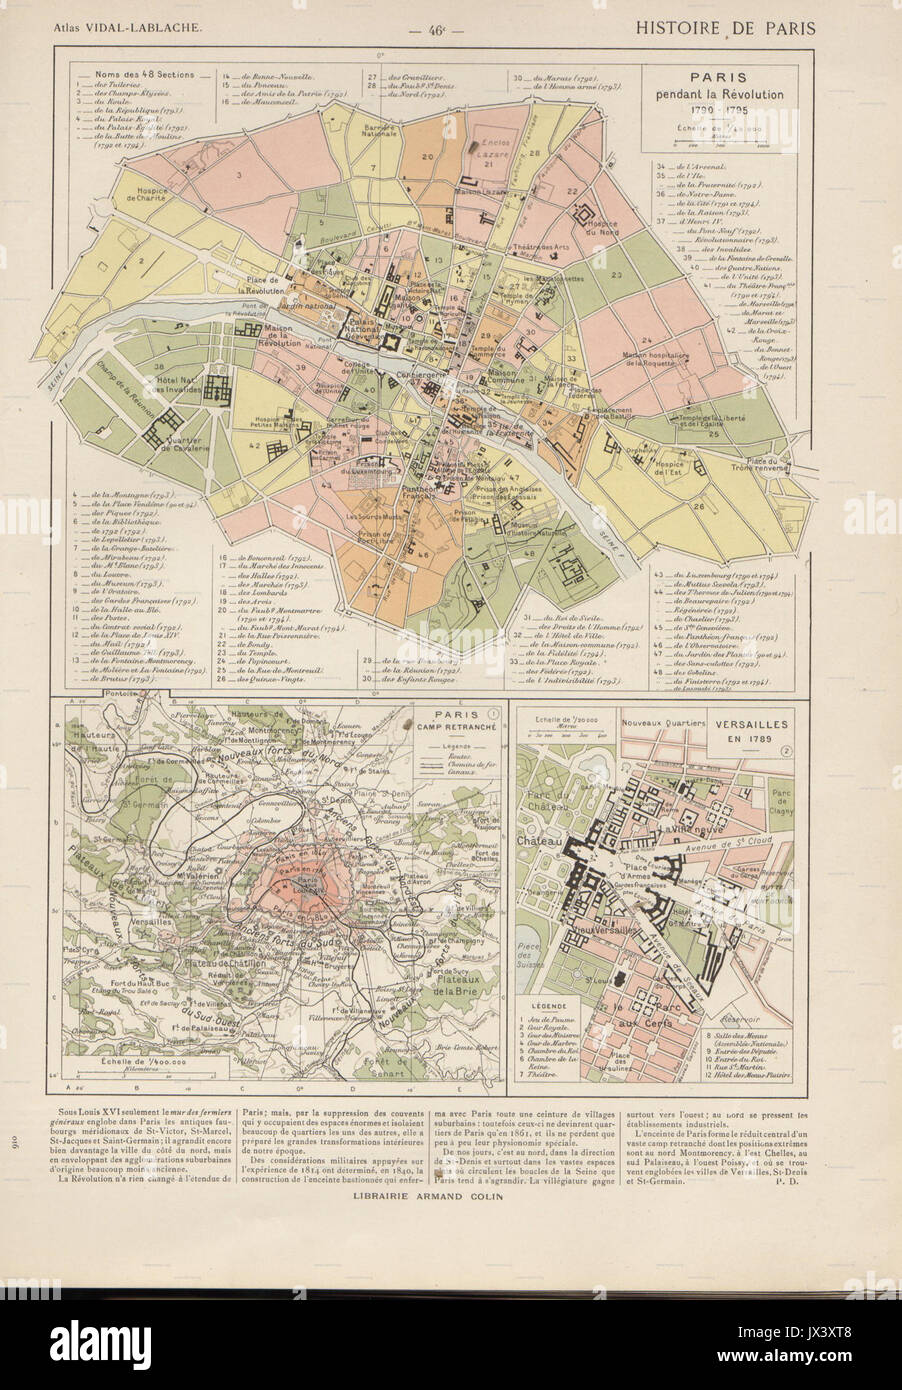 Vidal Lablache Atlas General Histoire et géographie, Paris 1795 et Versailles 1789 Hipkiss Banque D'Images